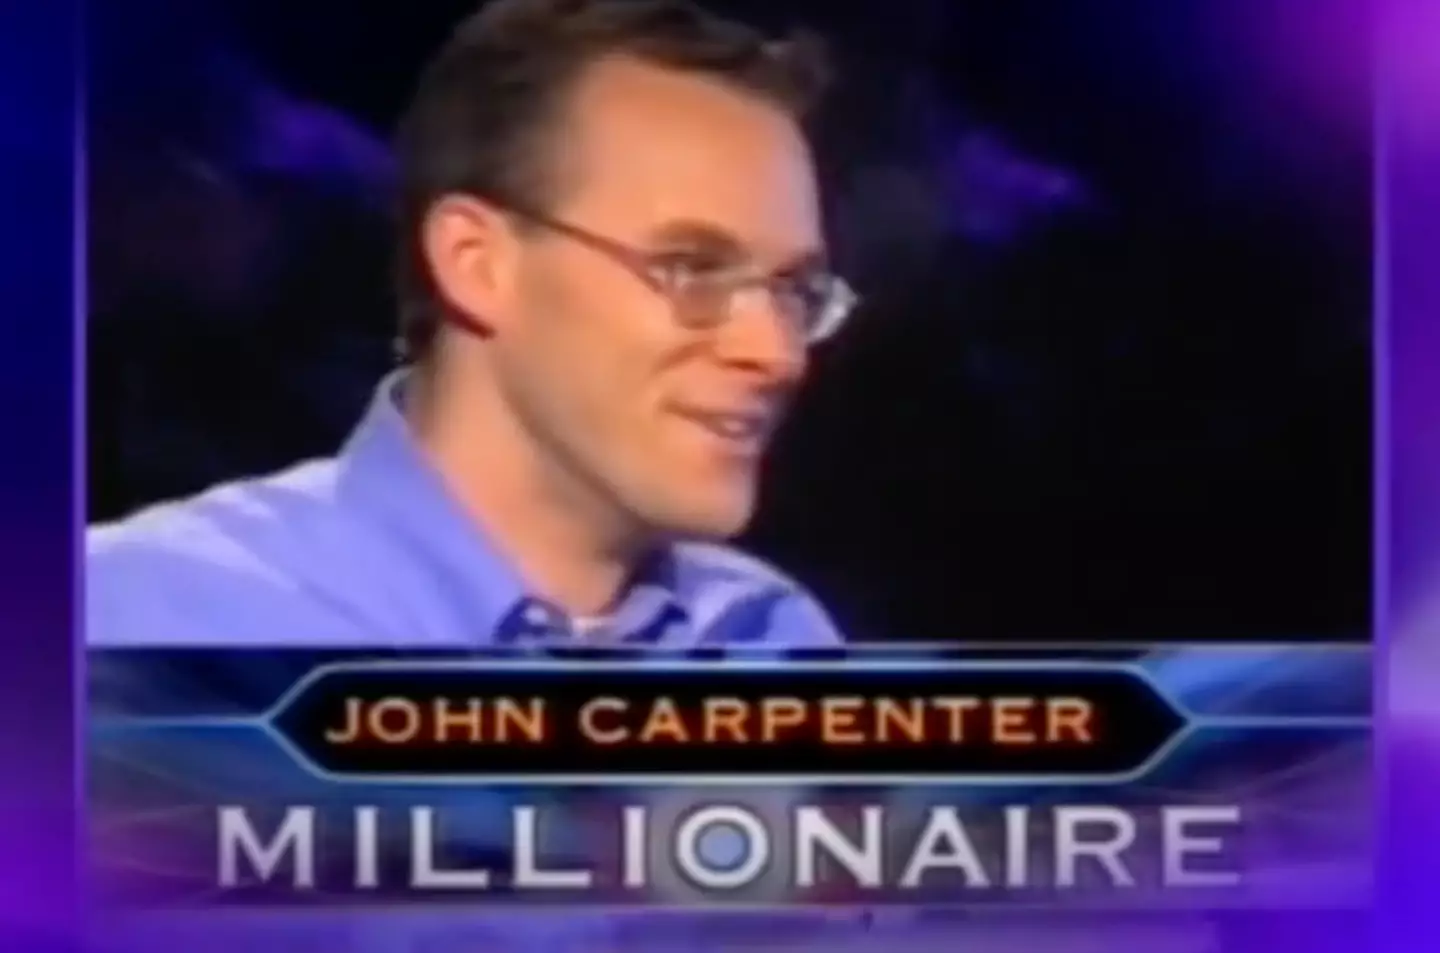 John Carpenter won $1,000,000.